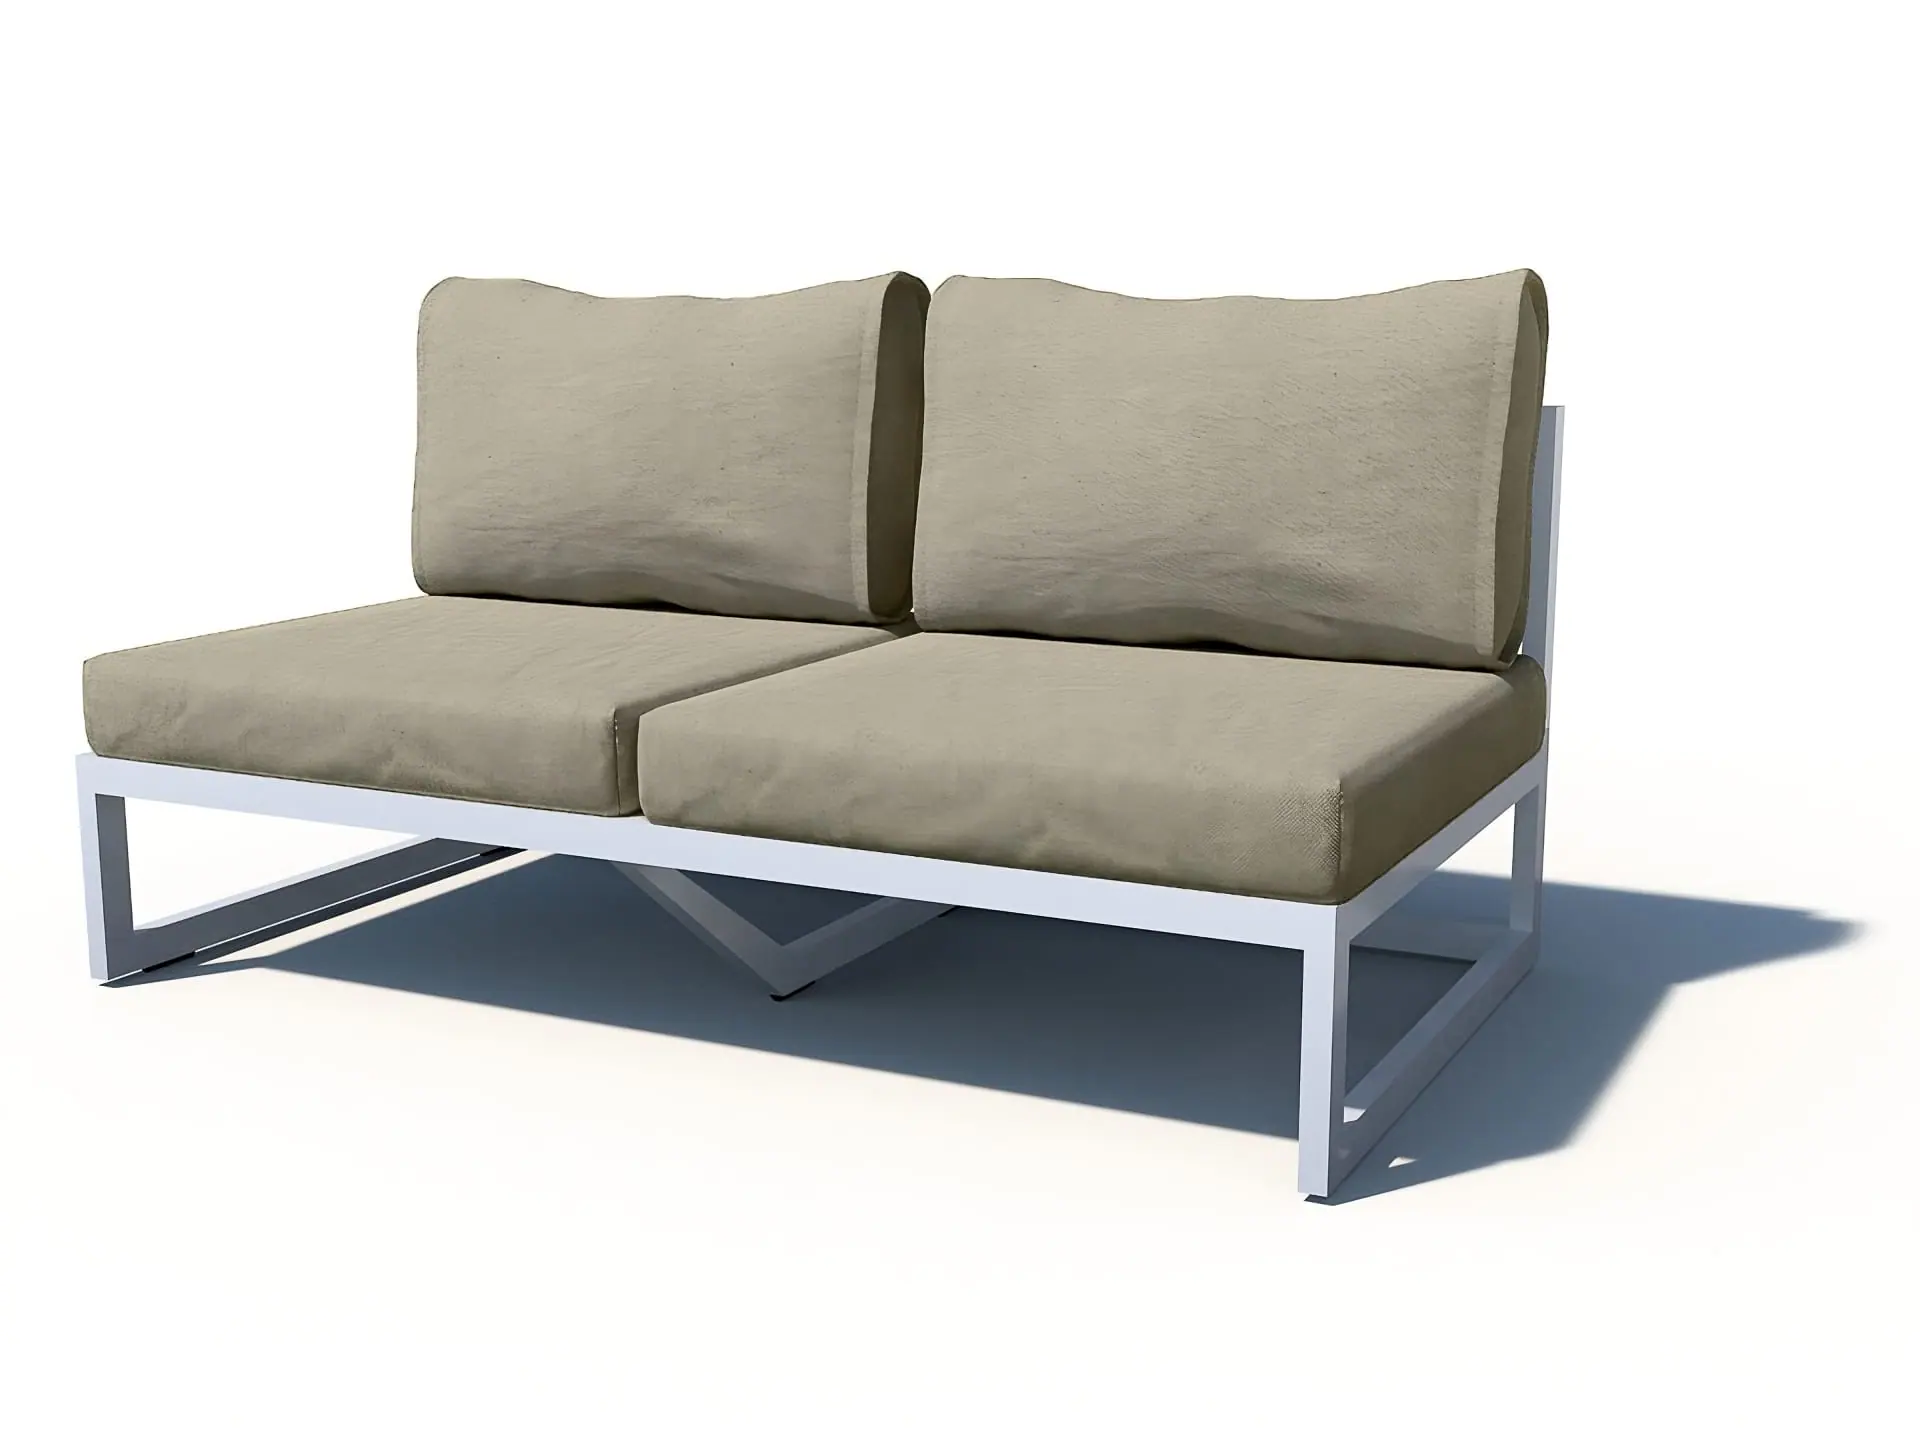 conva-chillout-aluminio-outdoor-sofa-lounge-aluminium-collection-9